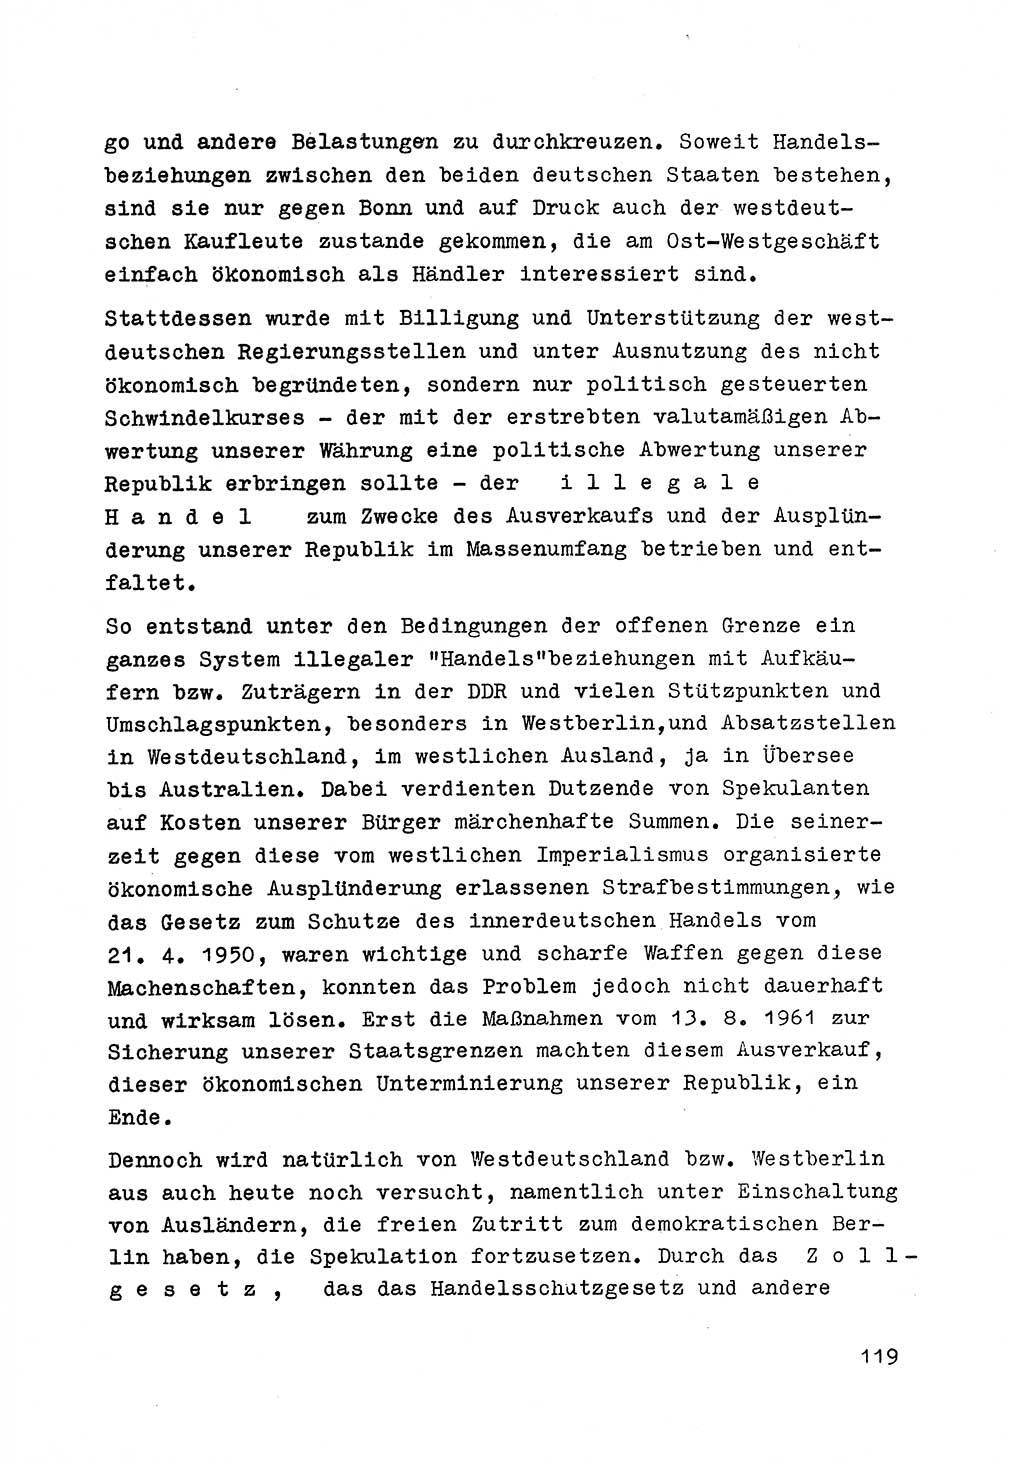 Strafrecht der DDR (Deutsche Demokratische Republik), Besonderer Teil, Lehrmaterial, Heft 6 1970, Seite 119 (Strafr. DDR BT Lehrmat. H. 6 1970, S. 119)